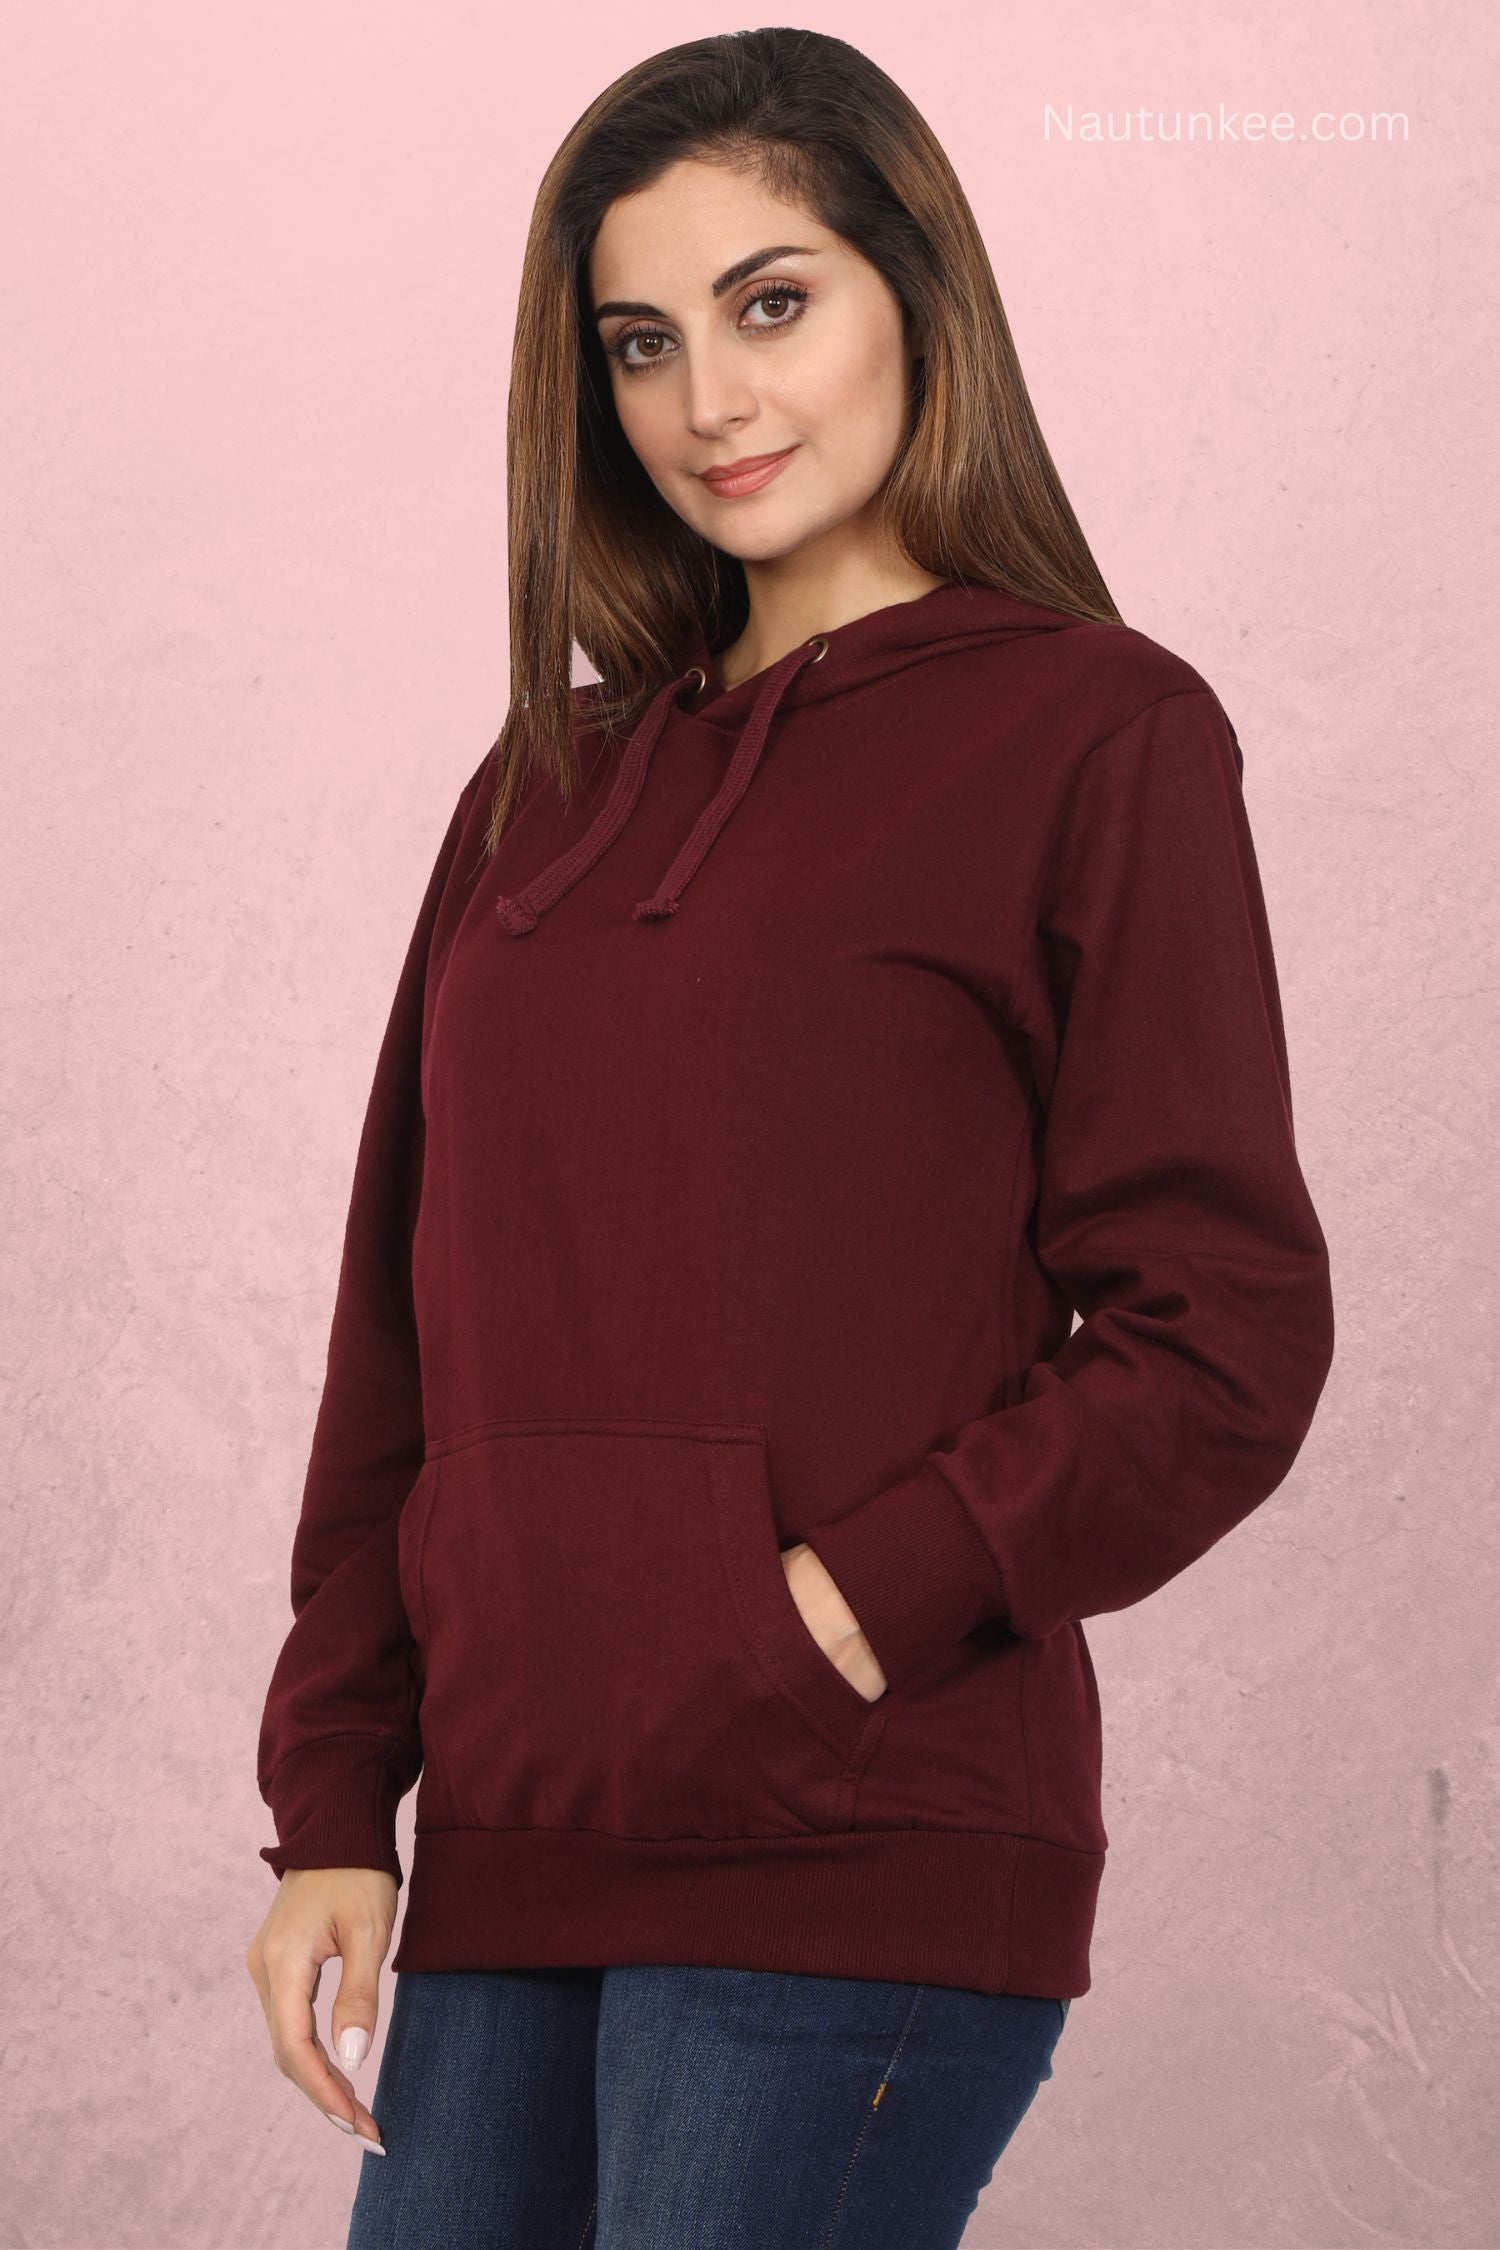 maroon hoodie for women